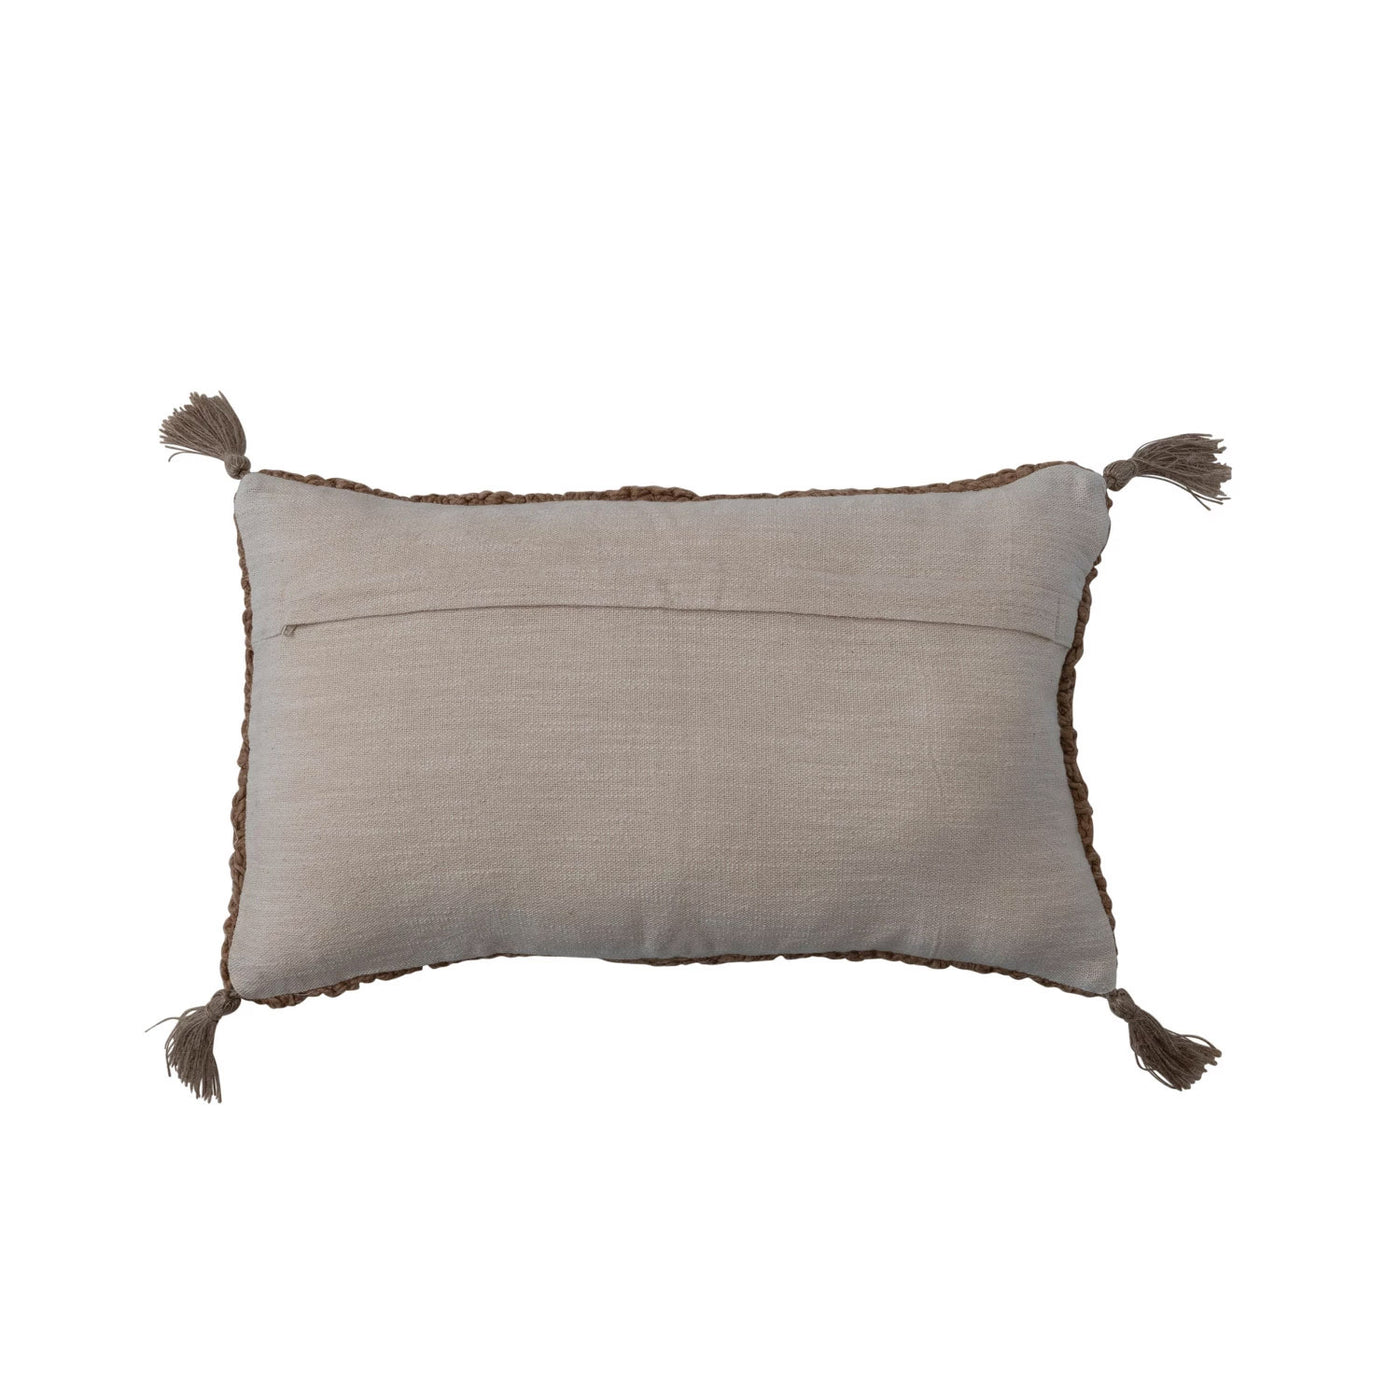 20" Camel Brown Woven Lumbar Pillow